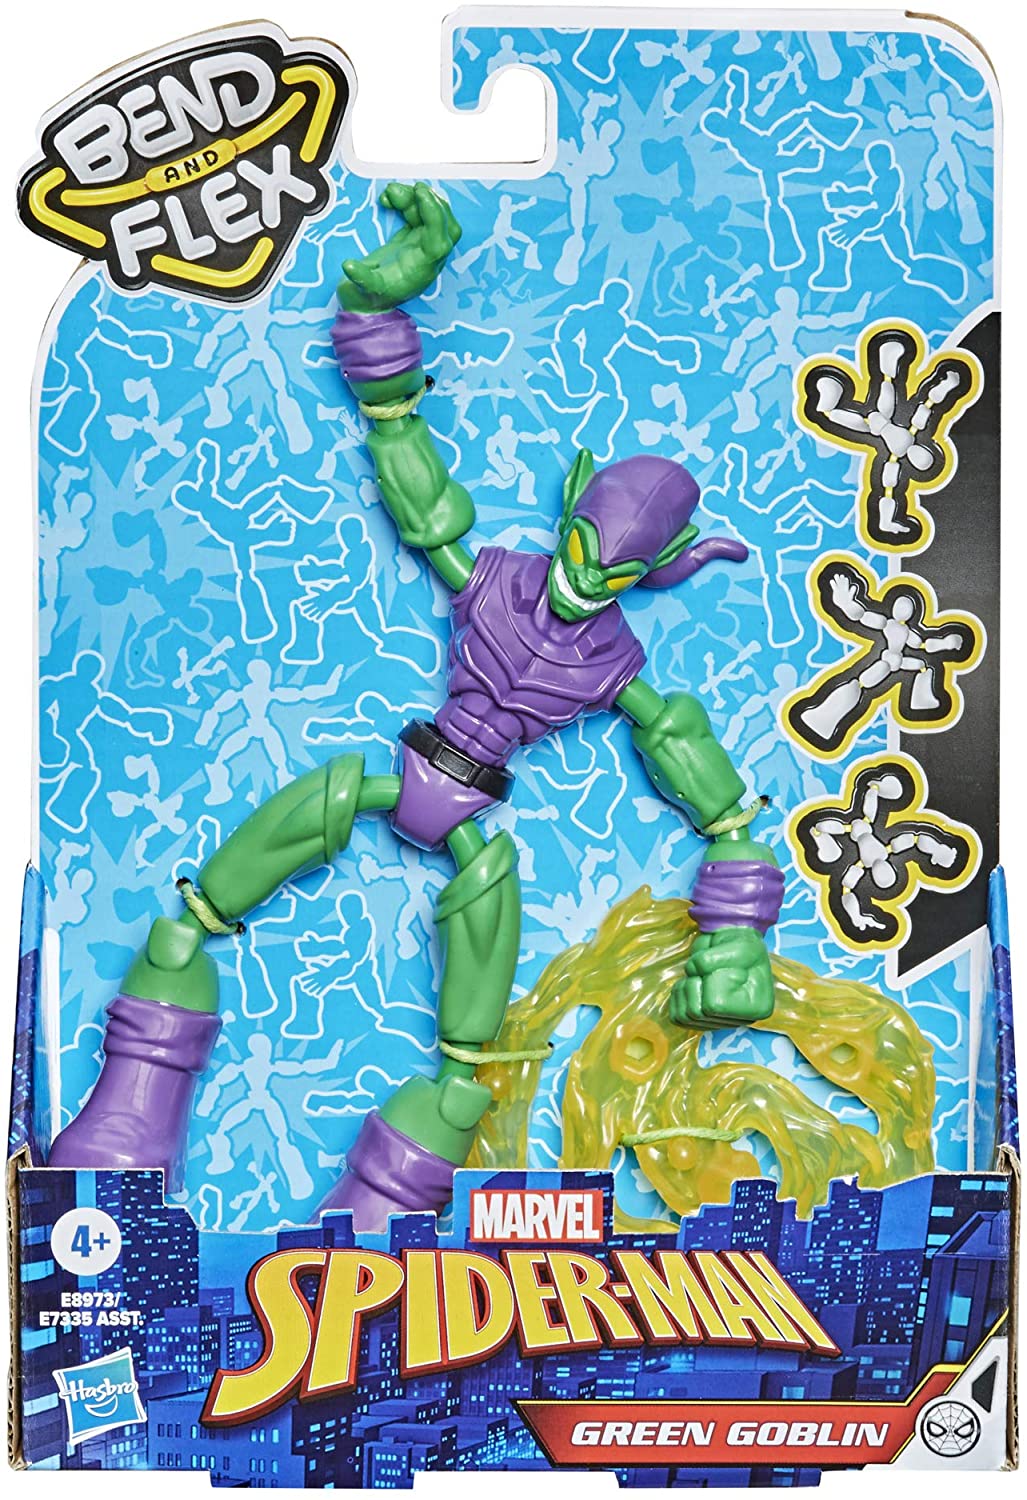 Hasbro Marvel Spider-Man Bend and Flex Green Goblin Actionfigur, flexible 6-Zoll-Figur, inklusive Blast-Zubehör ab 4 Jahren, E8973